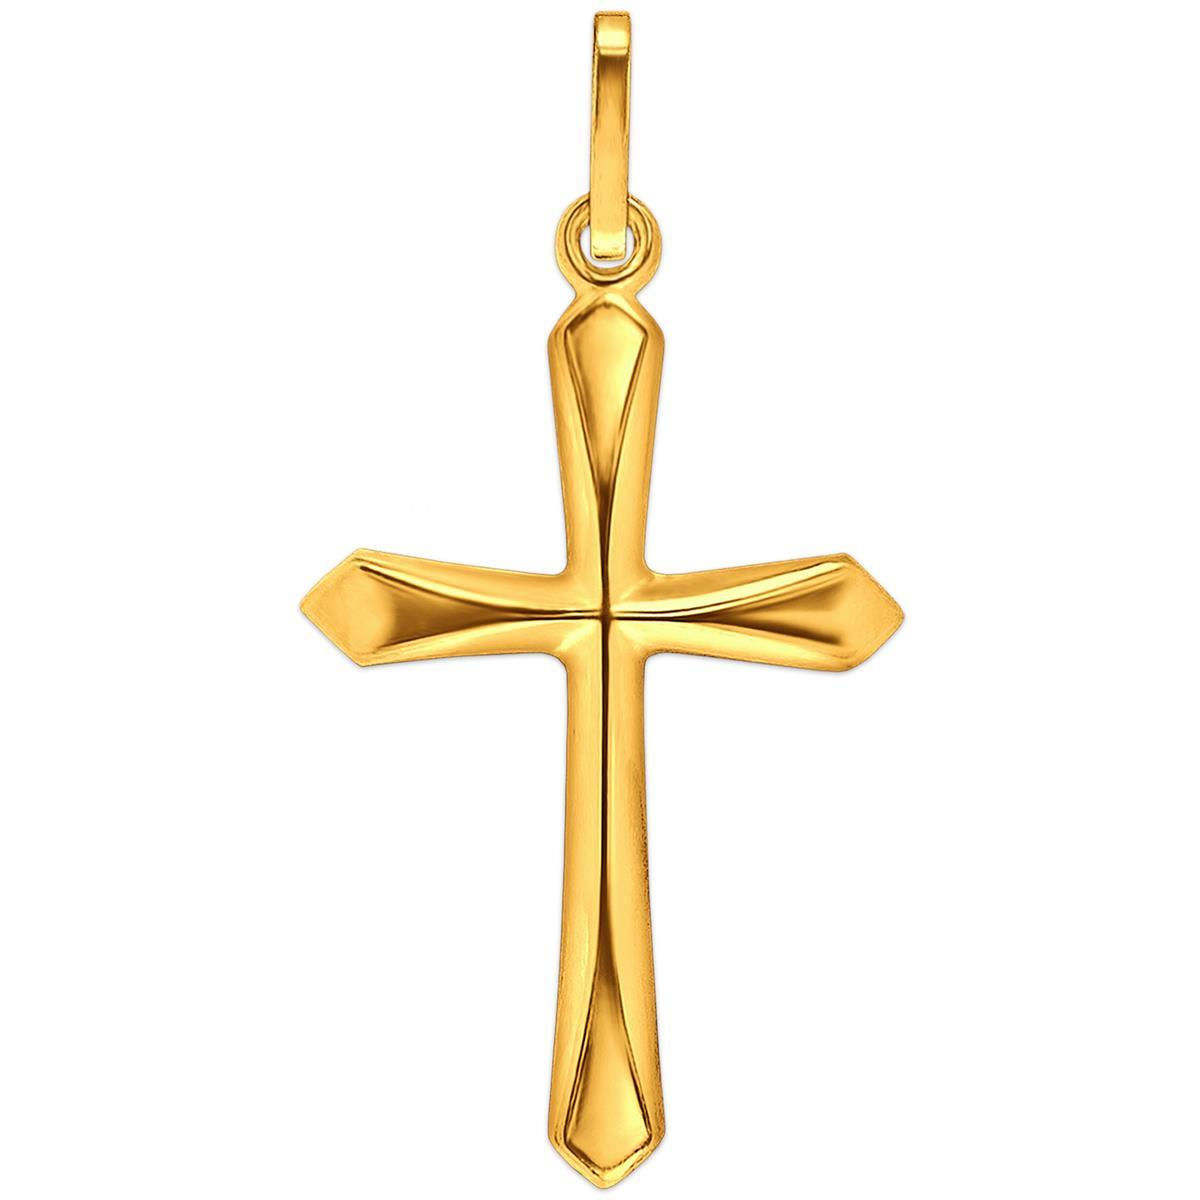 Kreuz 20 mm glänzend schlicht Enden eckige Form 333 Gelbgold 8 Karat